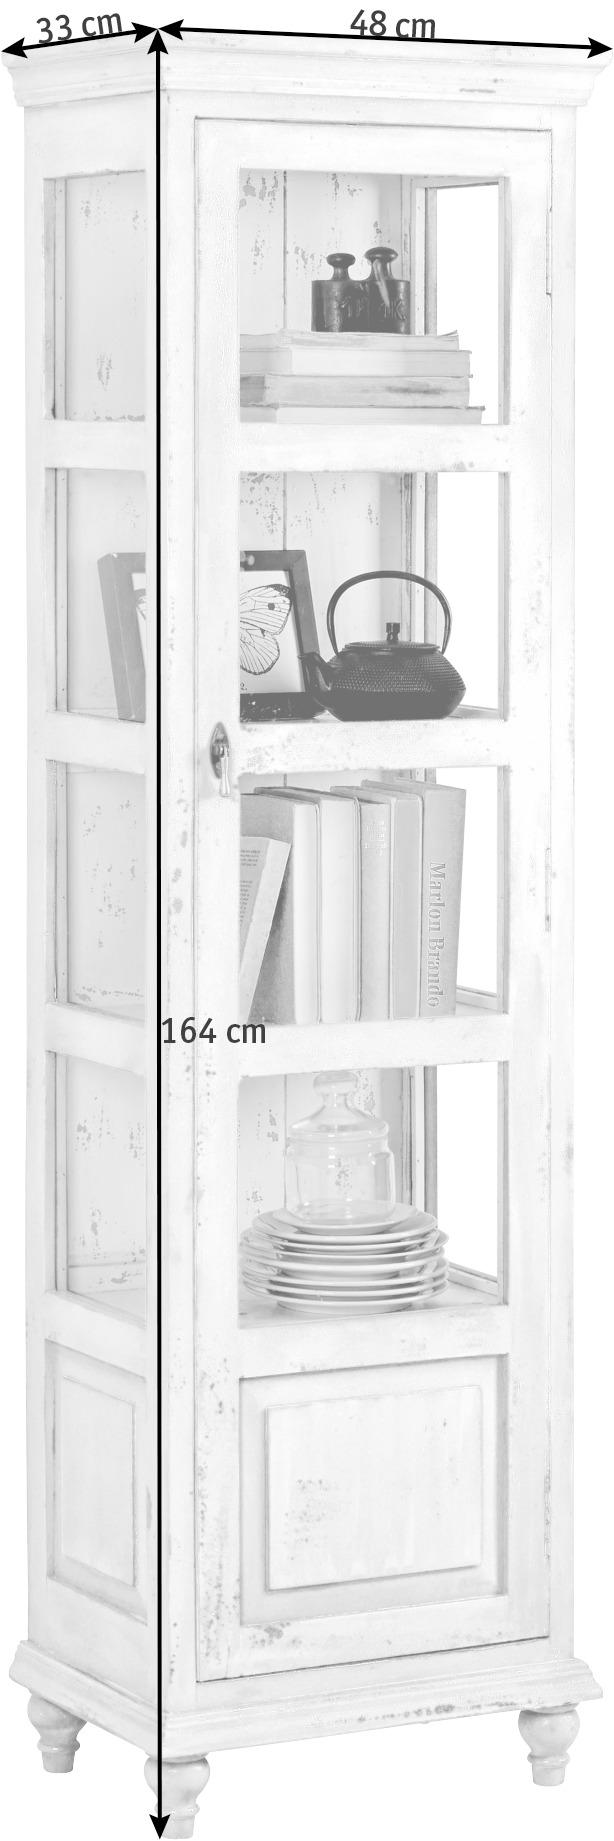 VITRÍNA, mangové drevo, biela, 48/164/33 cm - čierna/biela, Trend, kov/drevo (48/164/33cm) - Ambia Home